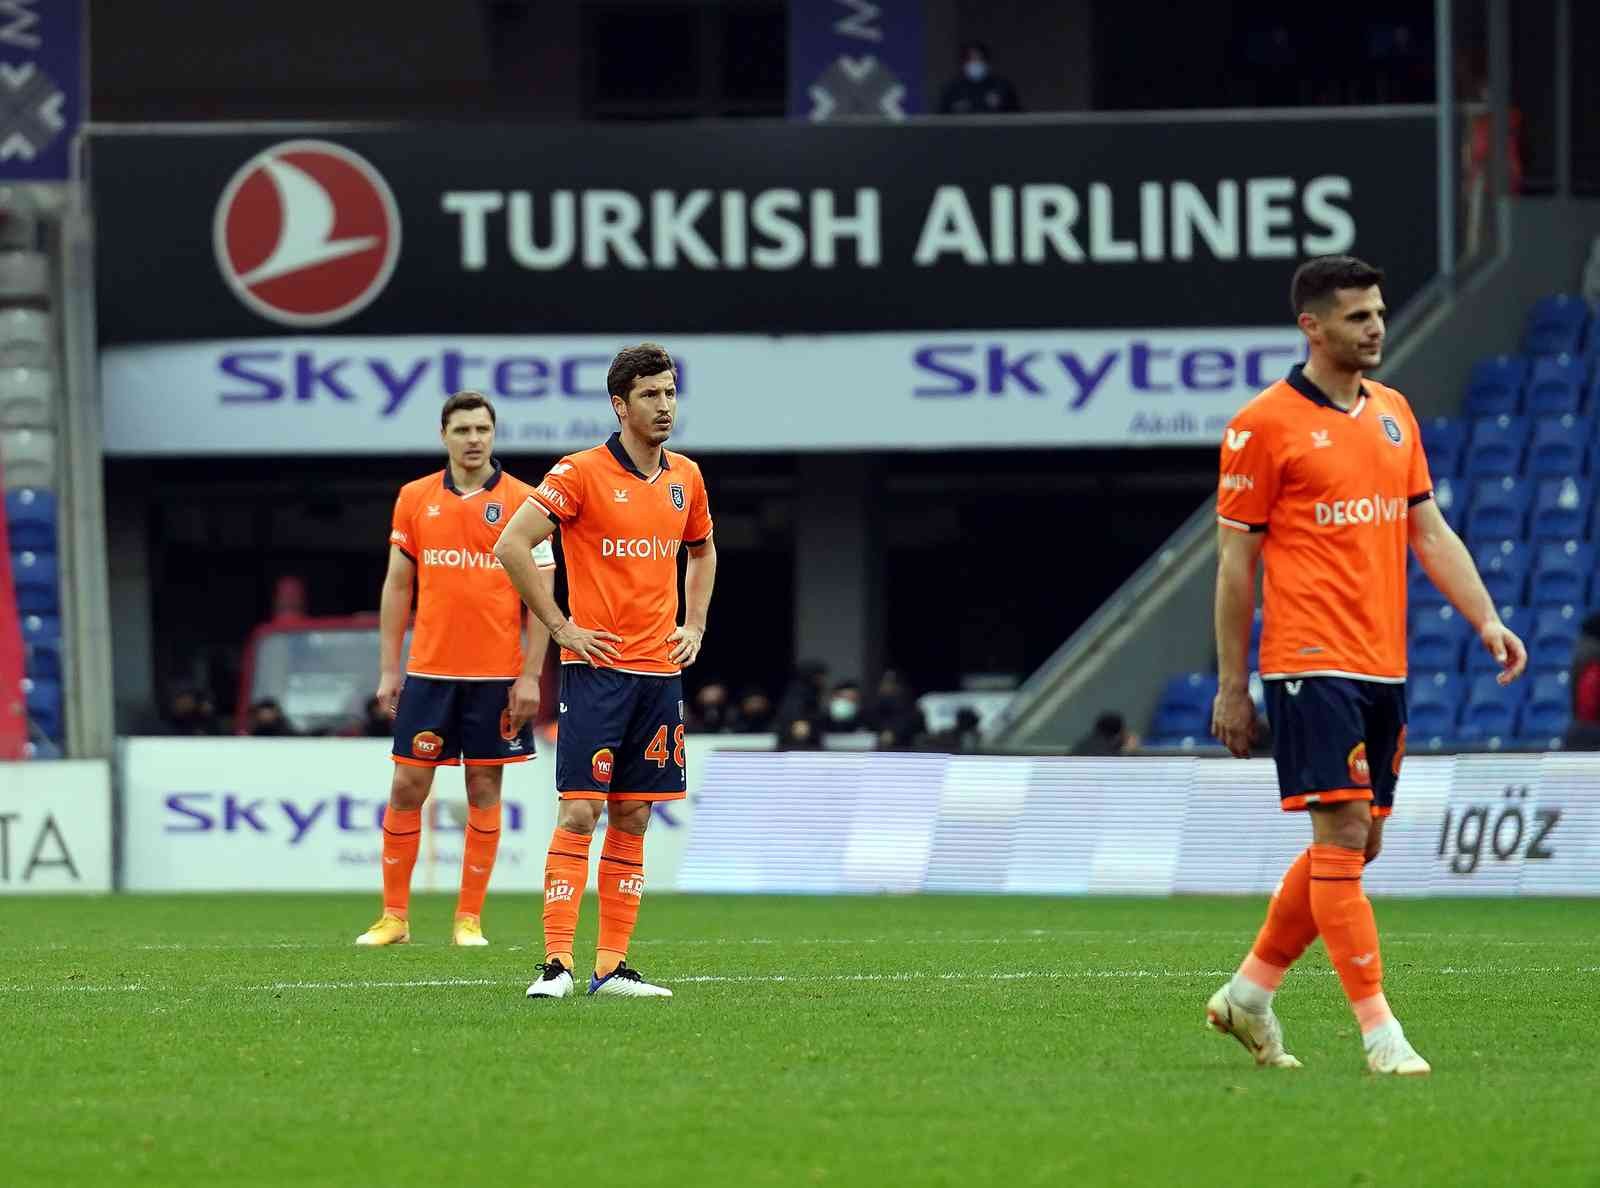 Spor Toto Süper Lig’in 27. haftasında Medipol Başakşehir, Fatih Karagümrük’ü ağırladı. Karagümrük, geriye düştüğü maçta 2 dakikada bulduğu 2 ...